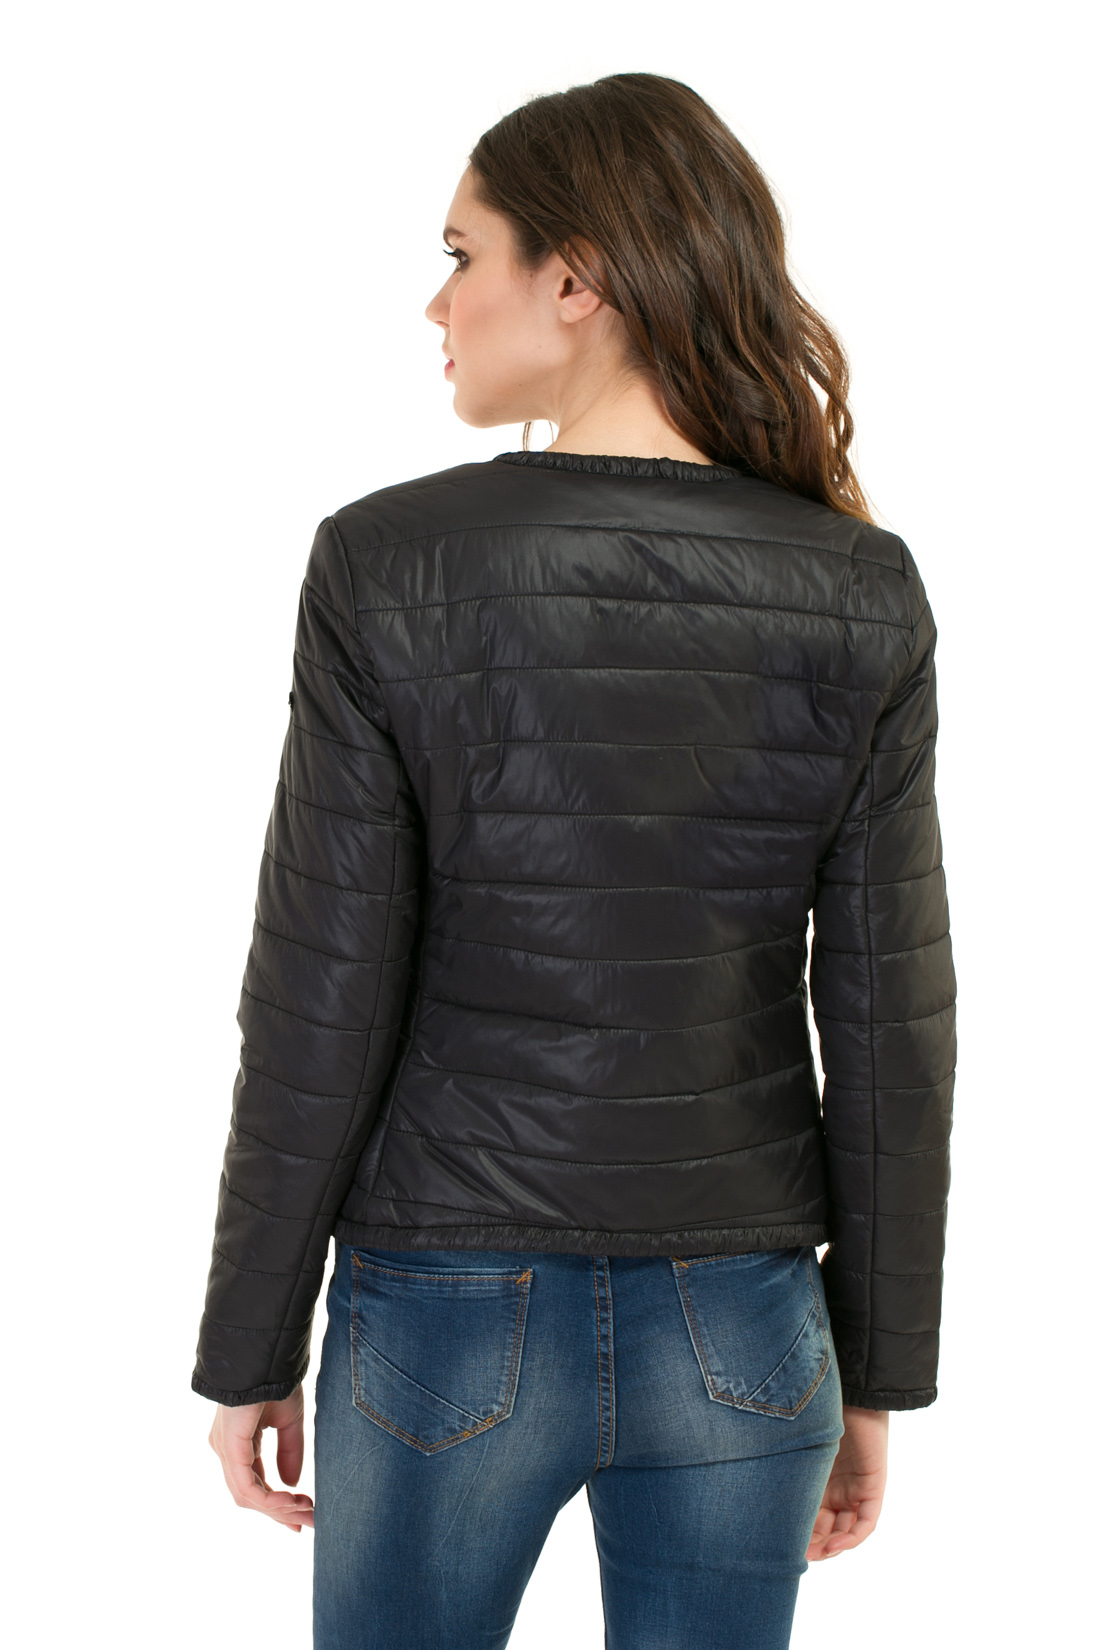 Утеплённая куртка-косуха (арт. baon B037038), размер XXL, цвет черный Утеплённая куртка-косуха (арт. baon B037038) - фото 2